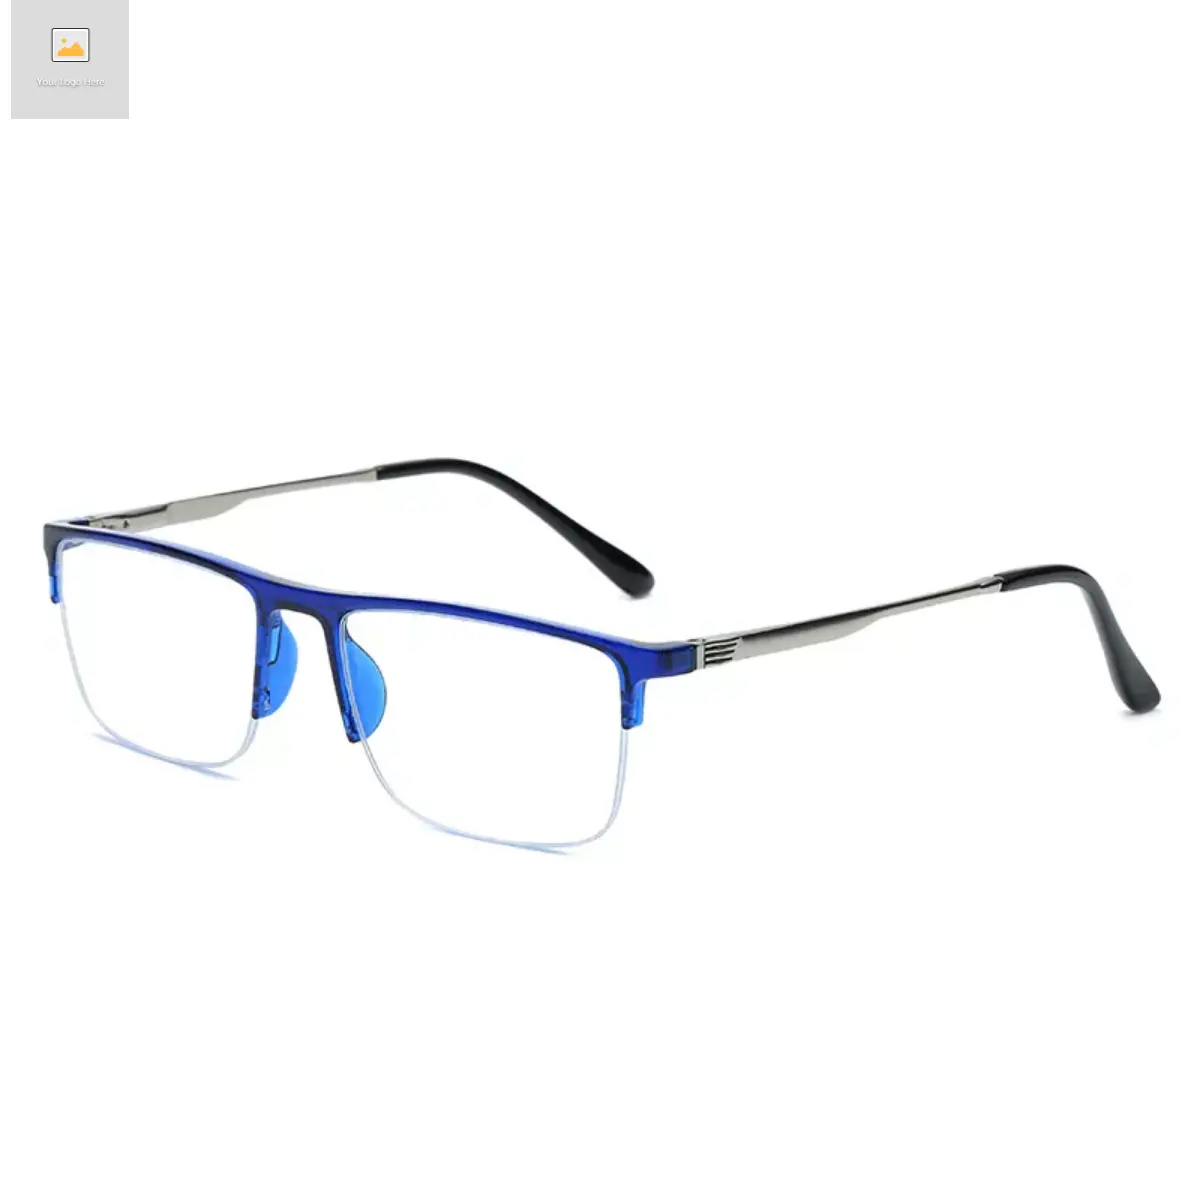 إطار نظارات بلاستيك للترويج رخيص من المصنع بالصين إطار نظارات للجنسين بعلامة تجارية أنيقة وزجاج كمبيوتر نظارات حجب للضوء الأزرق